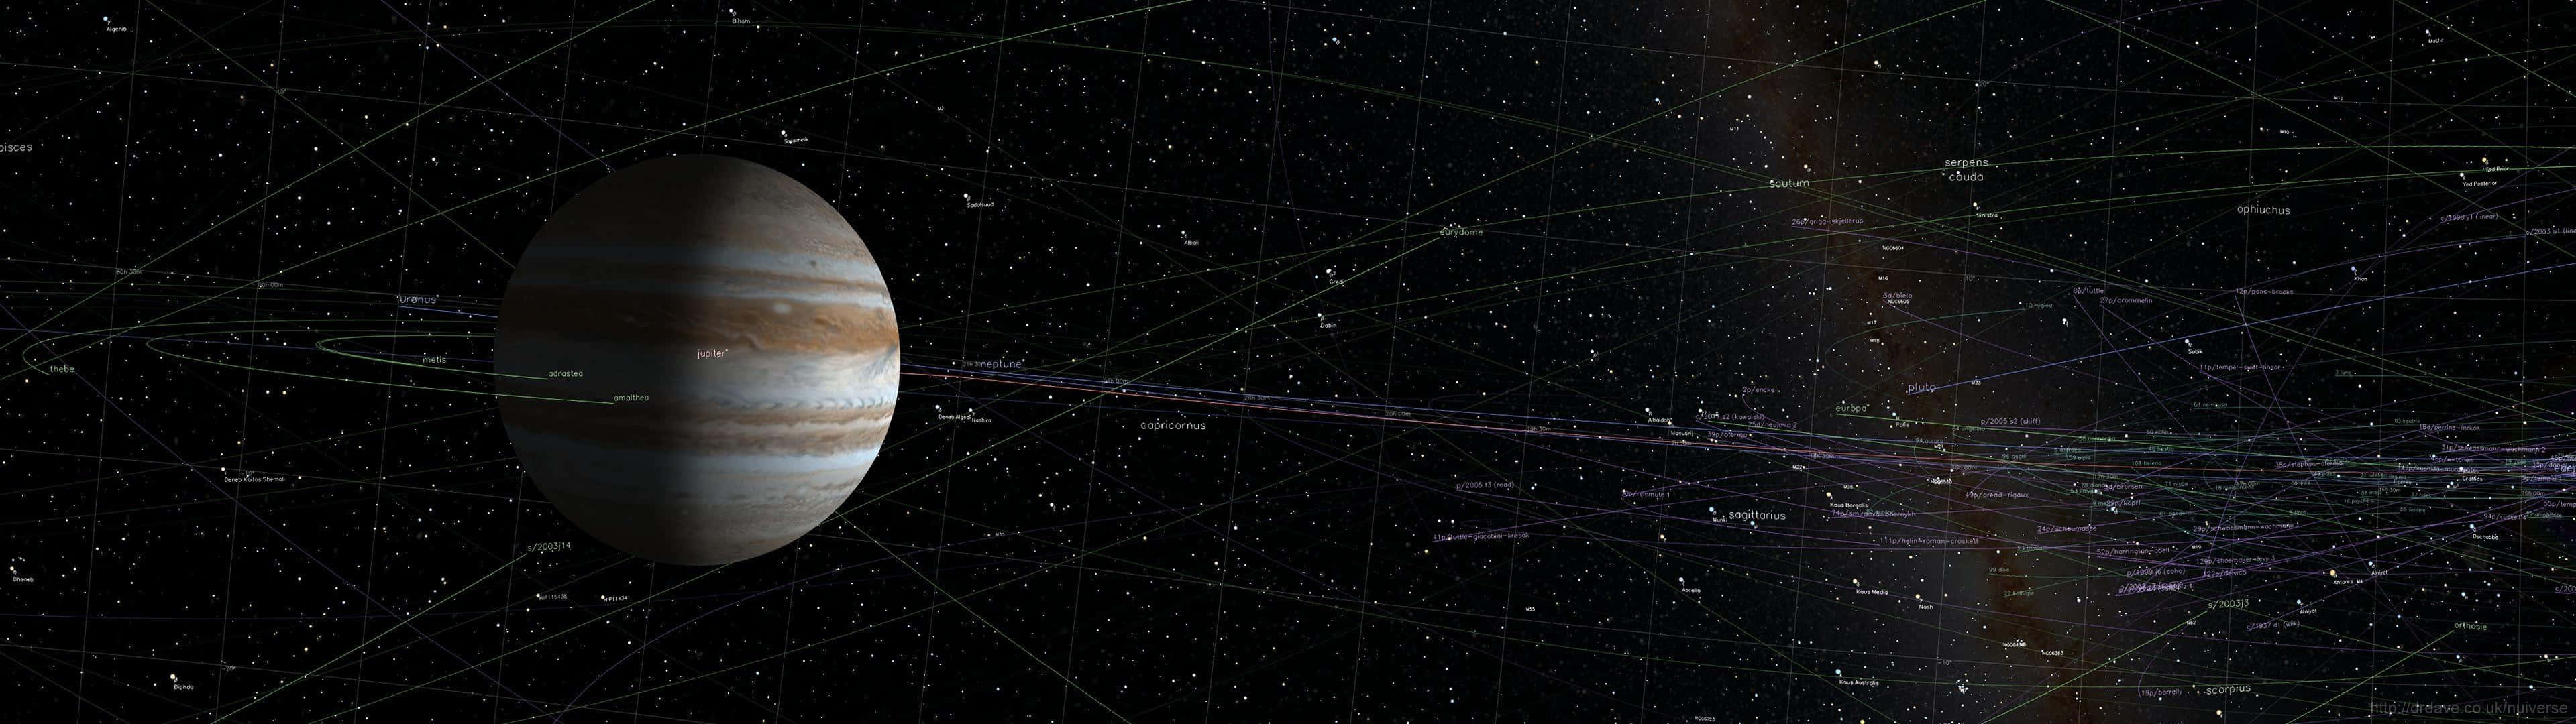 Einraumschiff Wird Zusammen Mit Einem Planeten Und Anderen Raumschiffen Gezeigt. Wallpaper